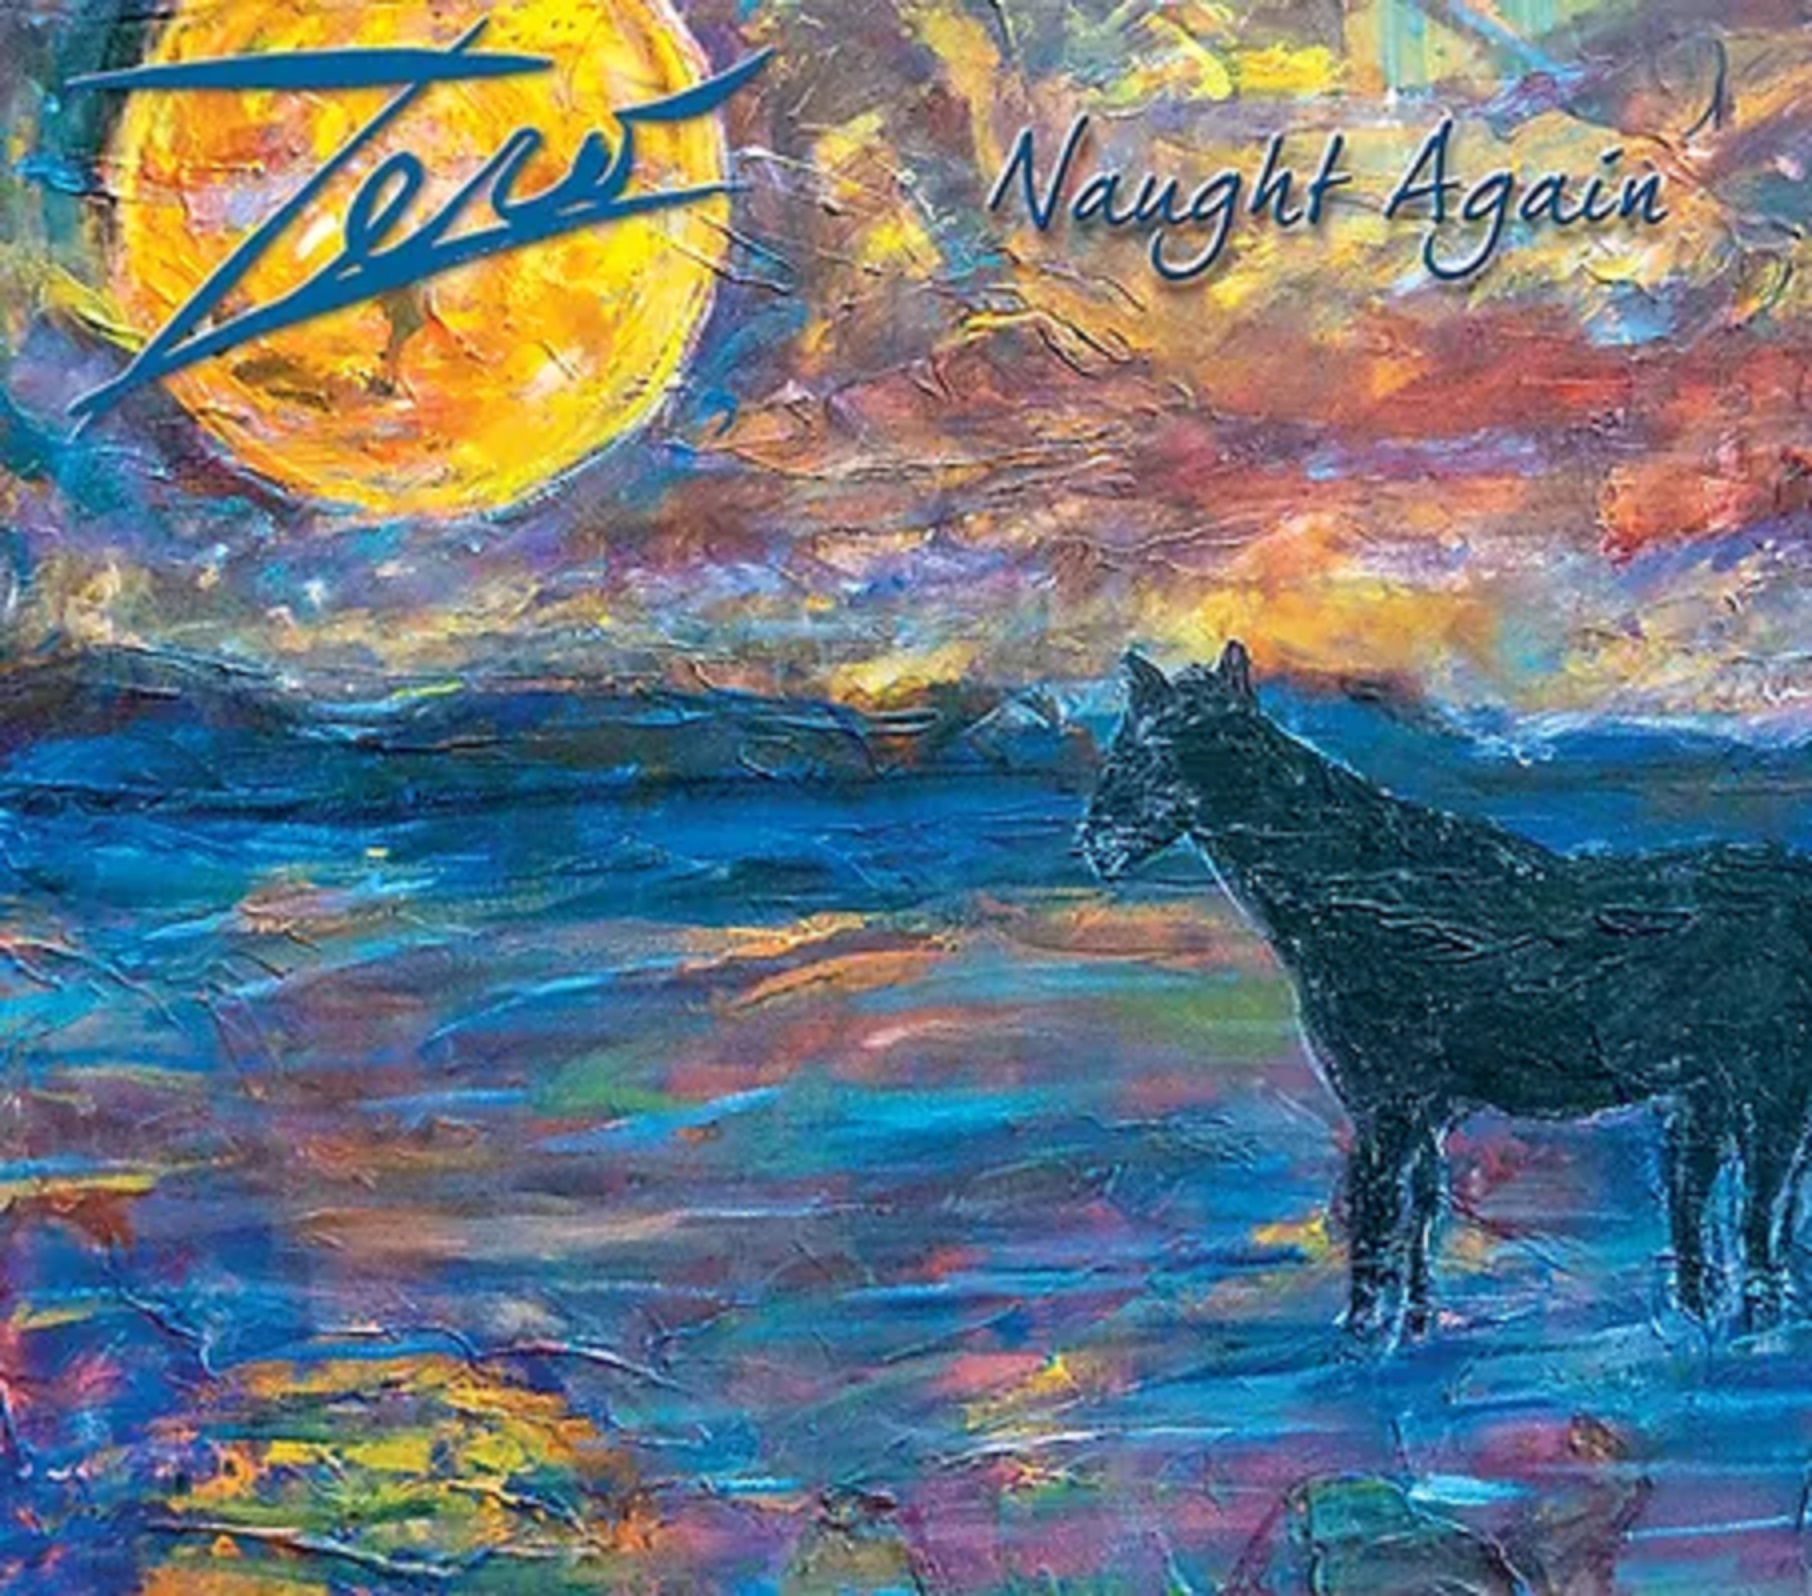 Zero releases new album, "Naught Again"